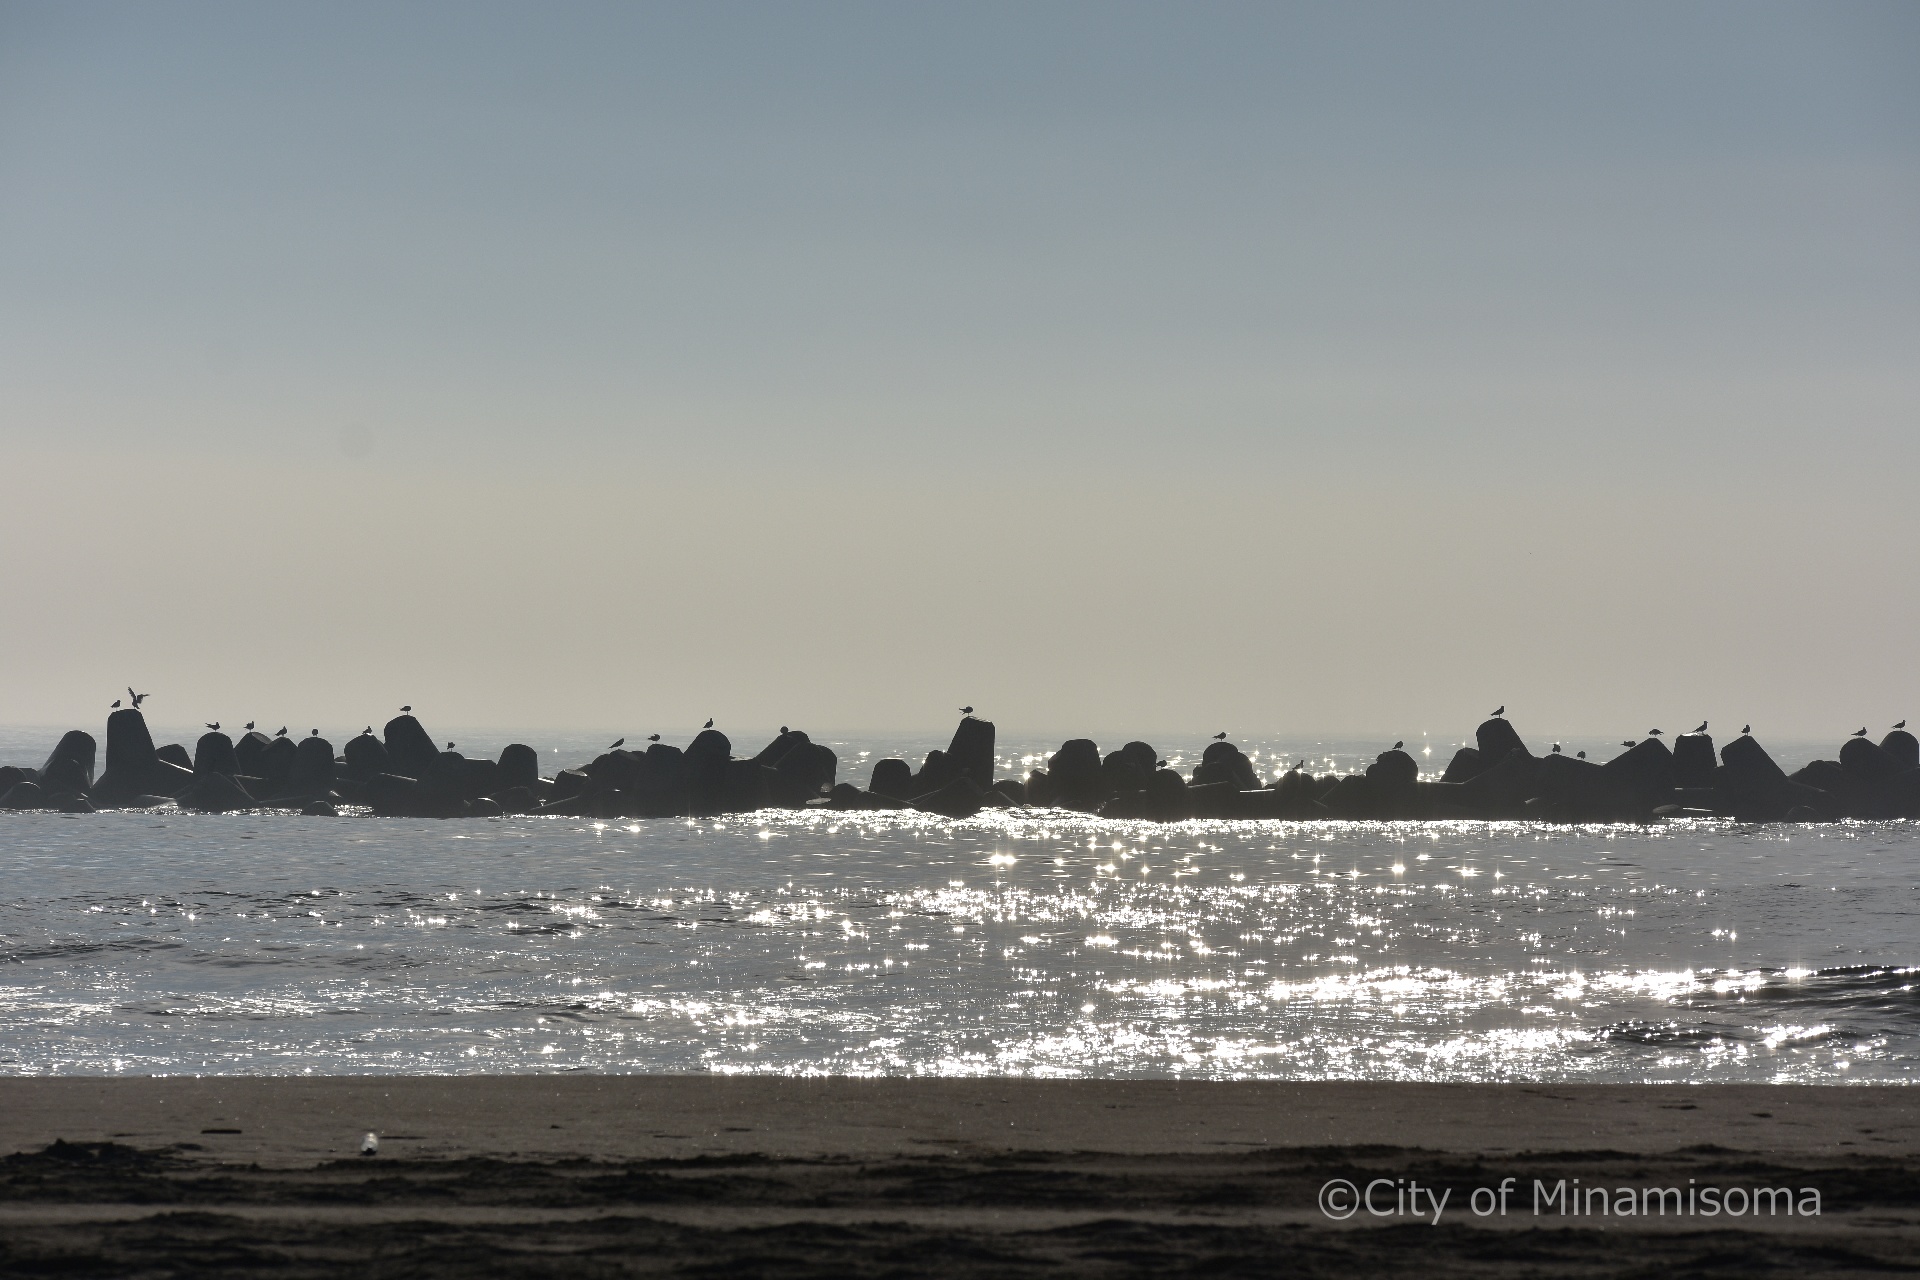 鹿島区烏崎海岸。朝の光に海面がキラキラと反射し、並ぶテトラポットに何羽もの海鳥が止まっている。